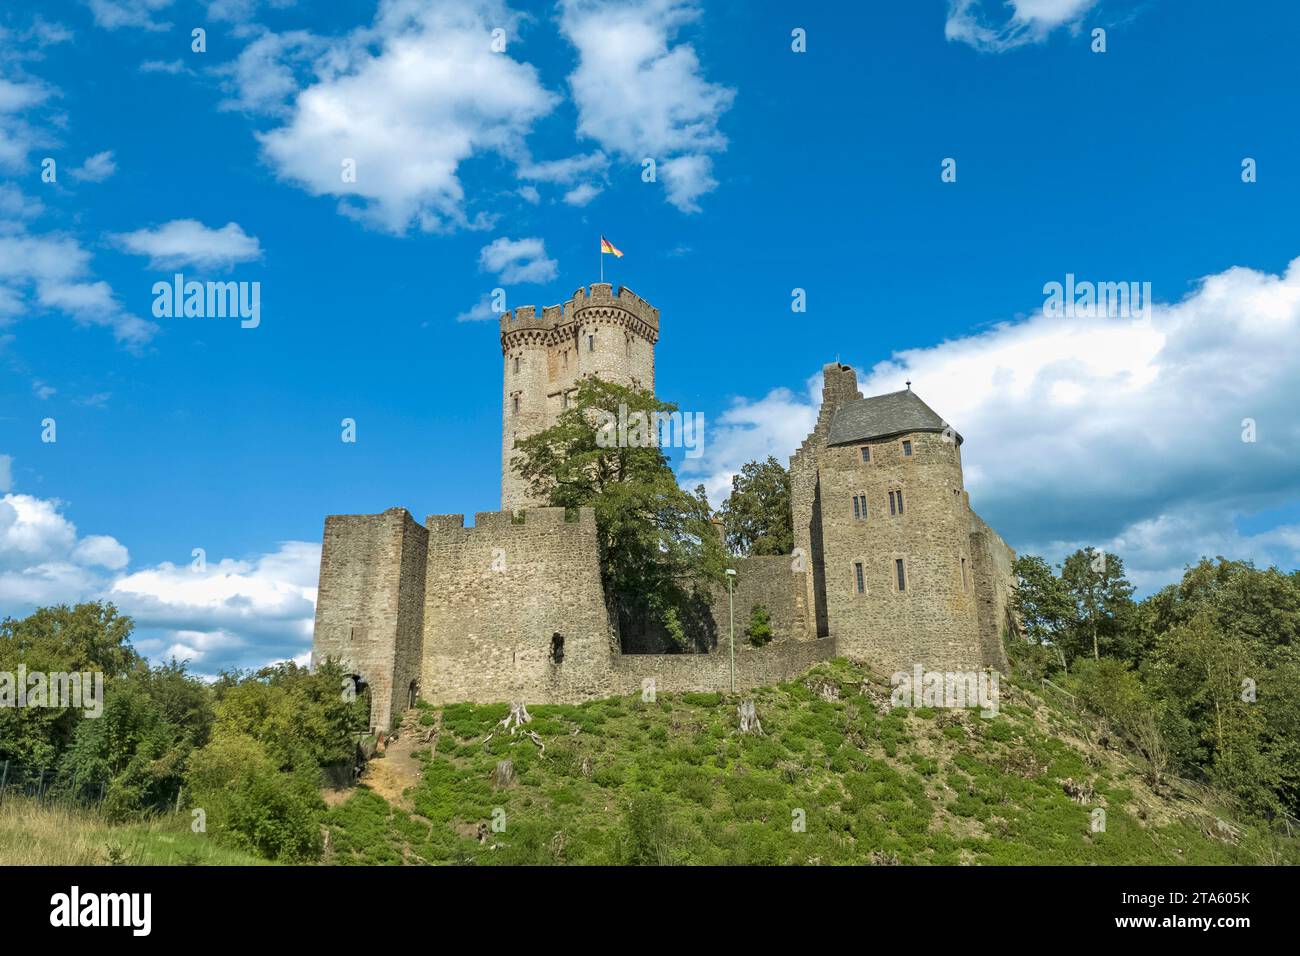 Il castello medievale di Kasselburg (XII secolo) vicino al villaggio di Pelm nel distretto di Vulkaneifel in Renania-Palatinato, Germania. Foto Stock